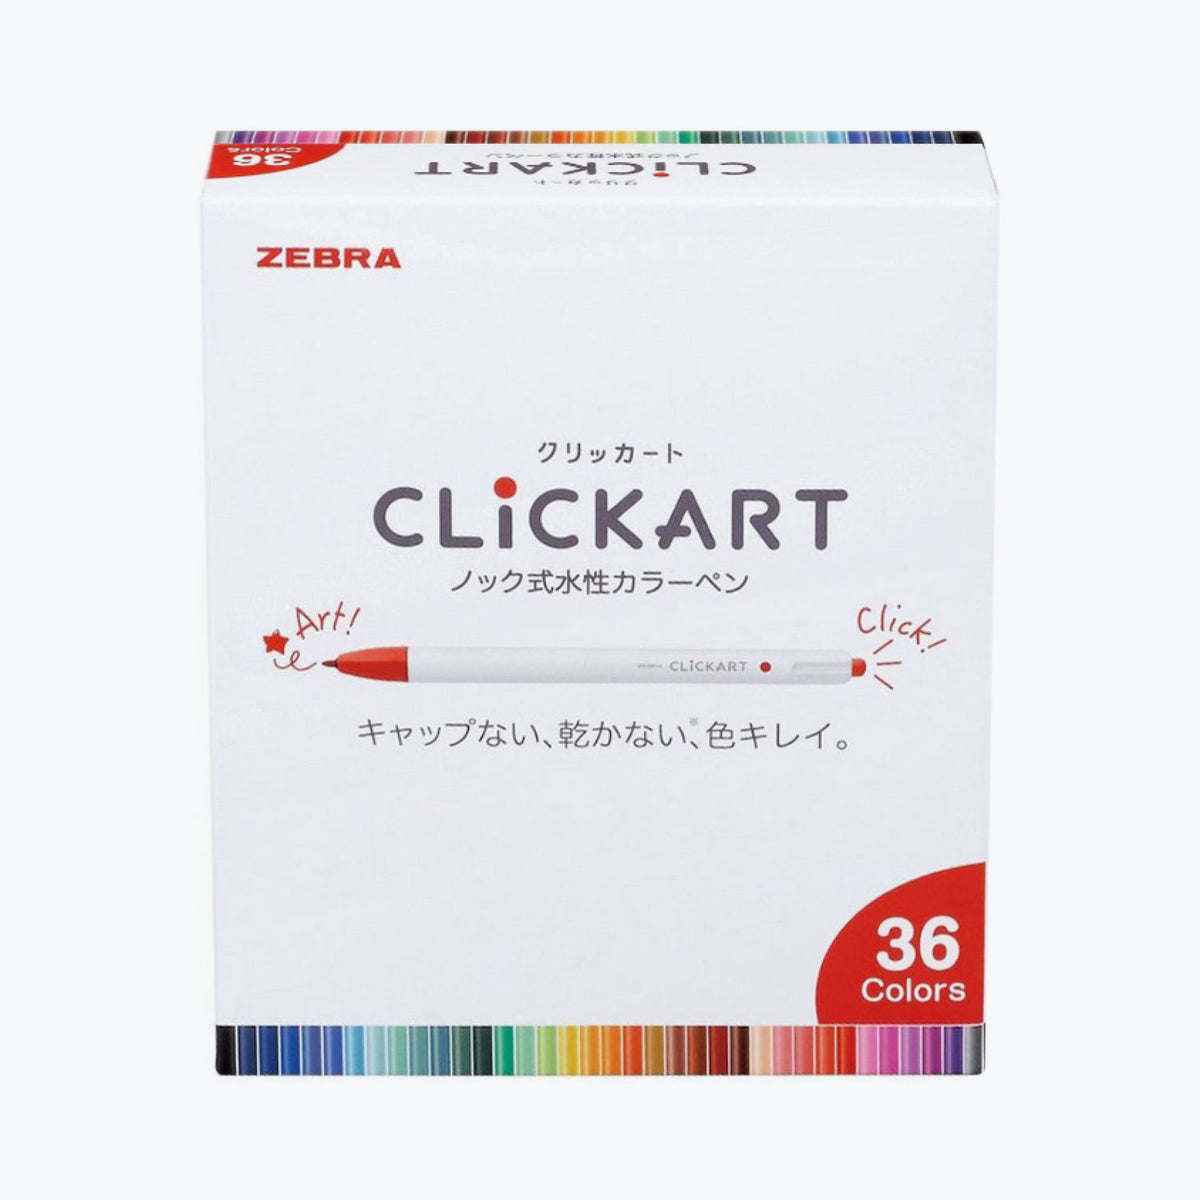 Zebra - Marker - Clickart 0.6mm - Complete Set